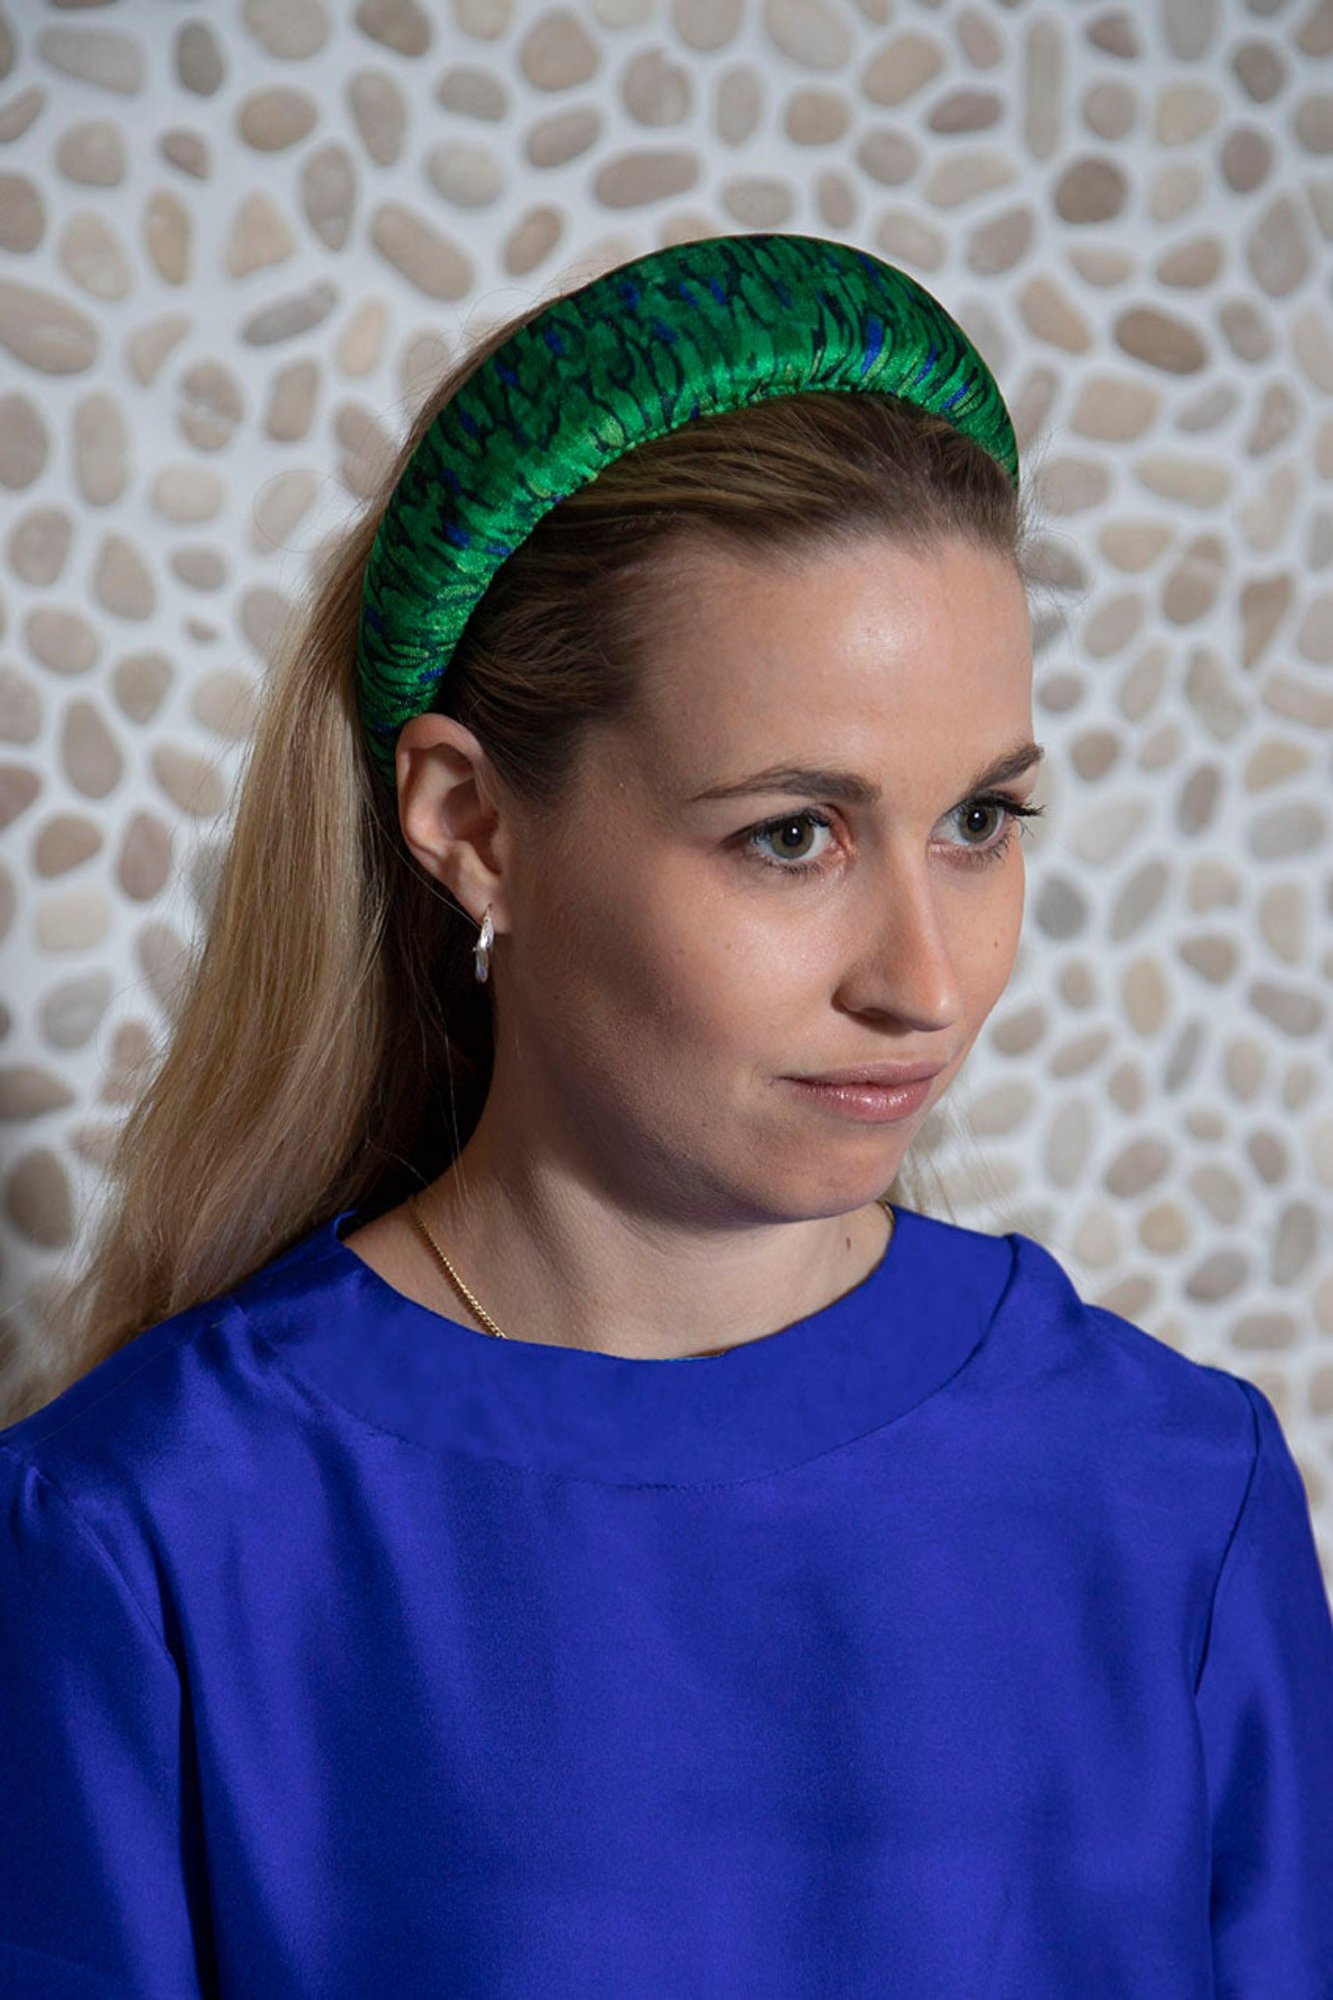 Flecked Emerald Velvet Padded Headband